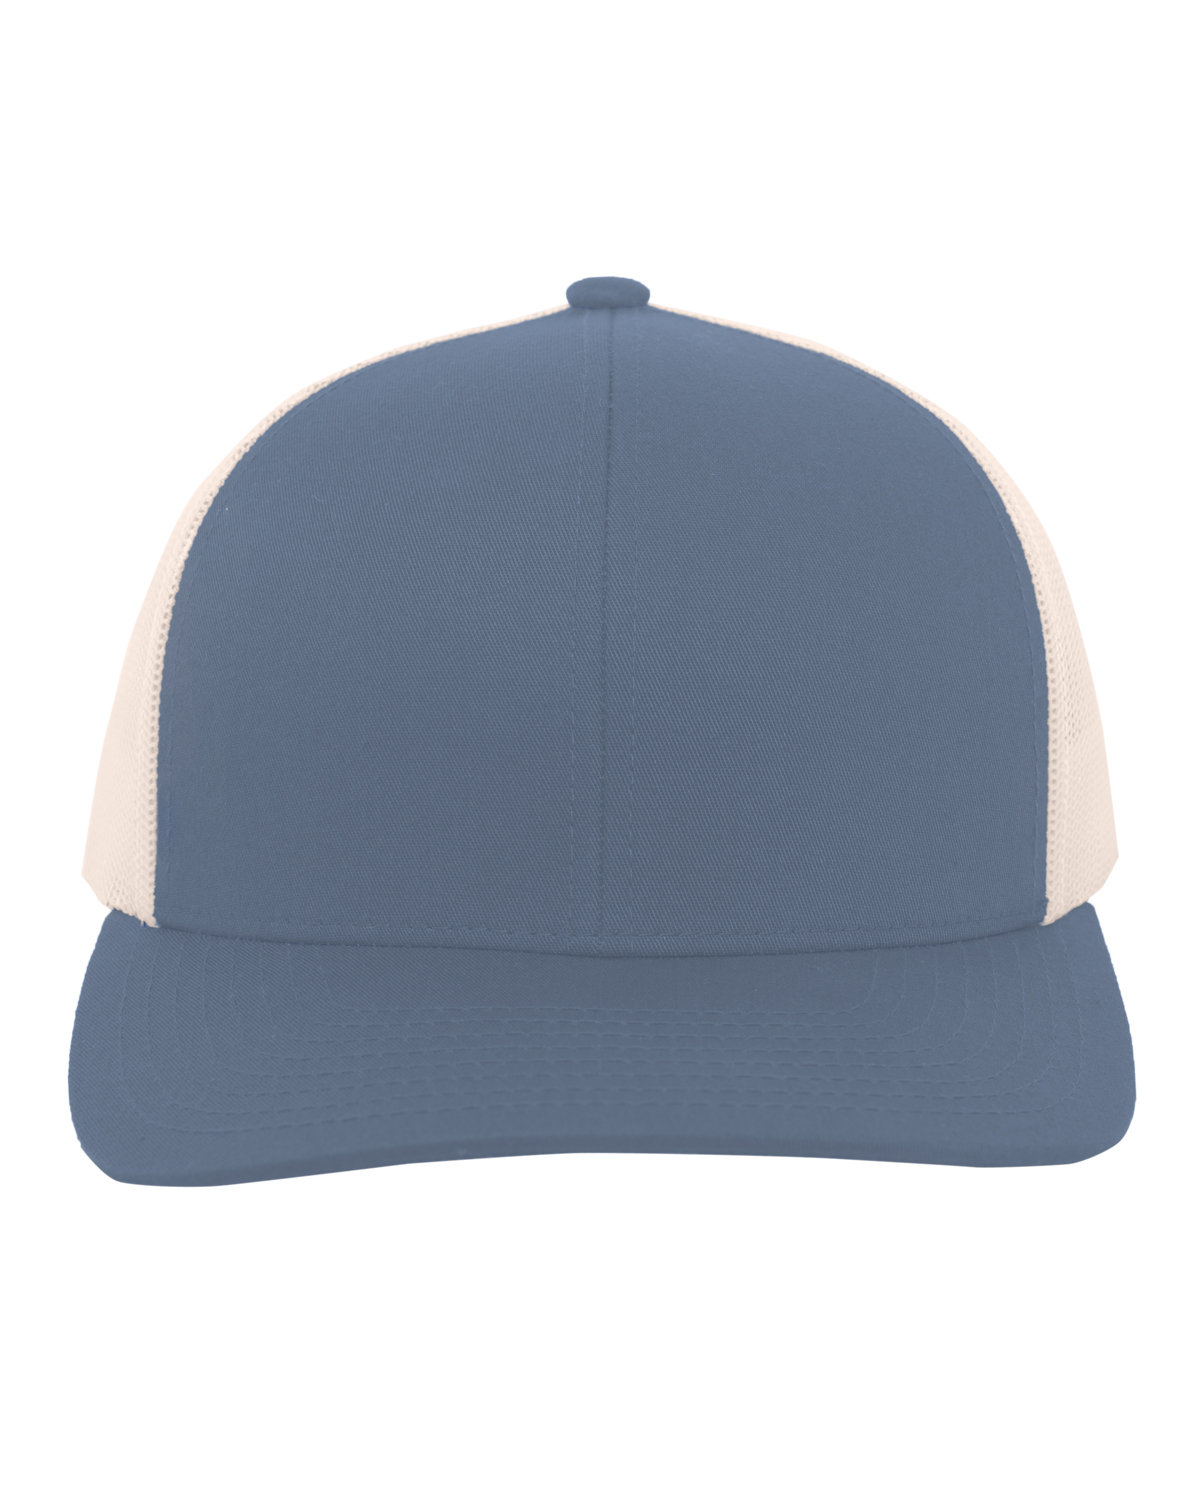 Pacific Headwear Trucker Snapback Hat OCEAN BLUE/ BGE 